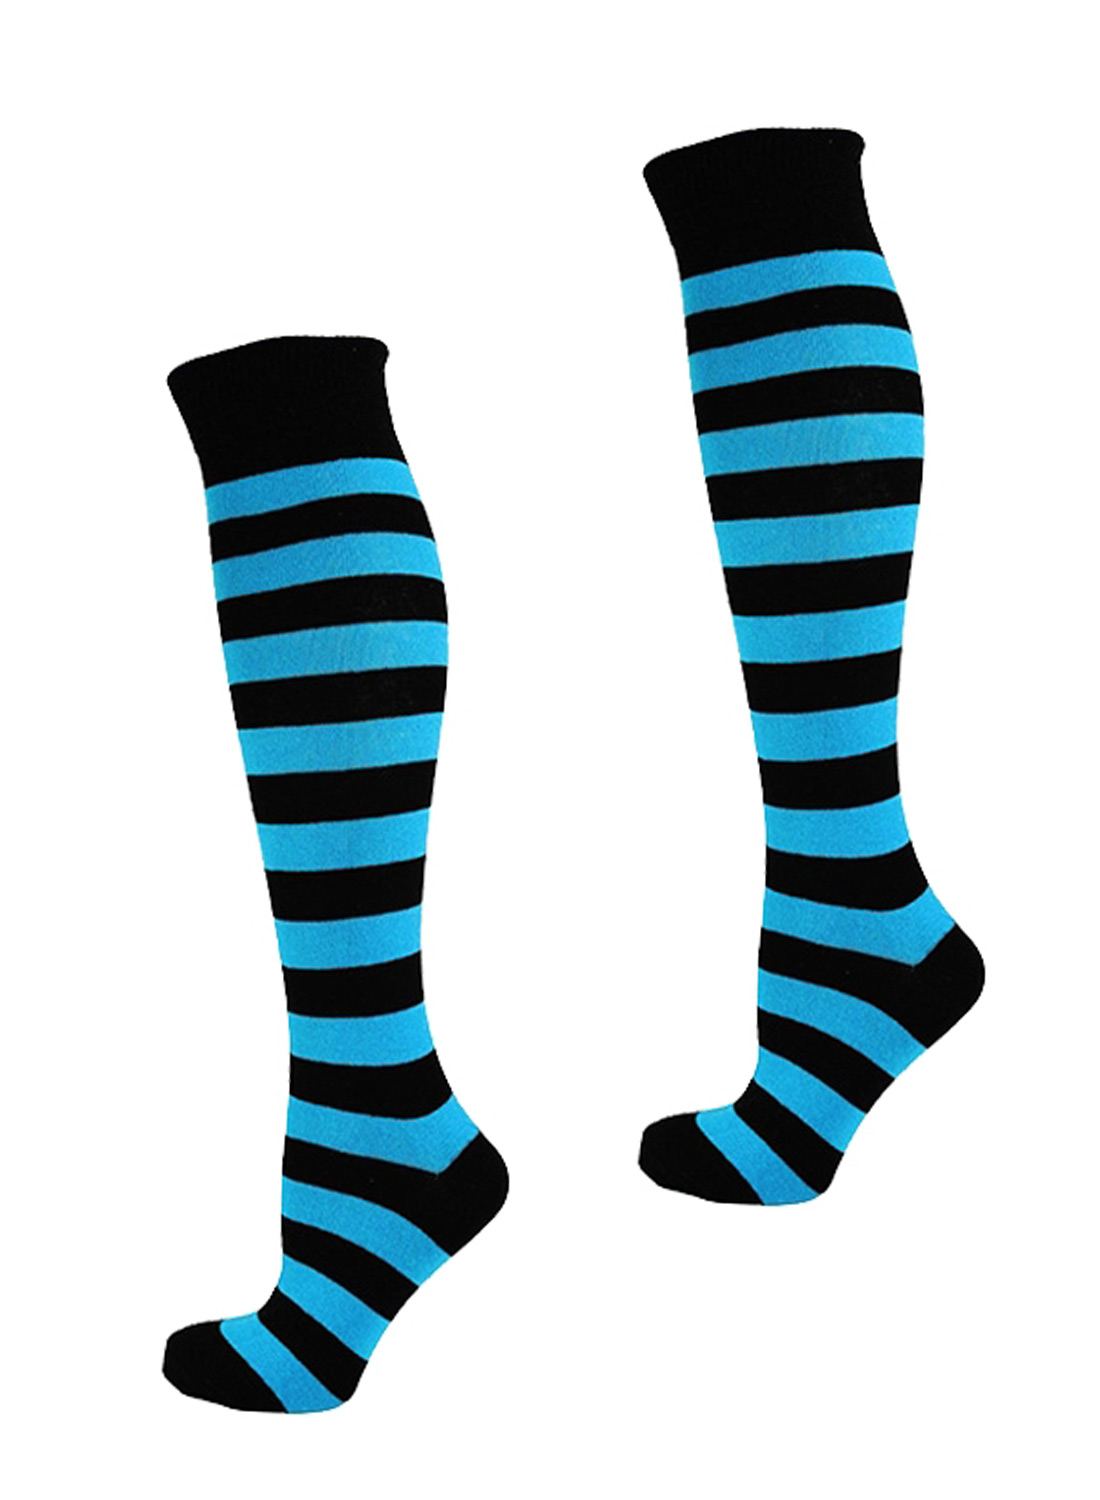 KH Socks Black Neon Blue Stripes